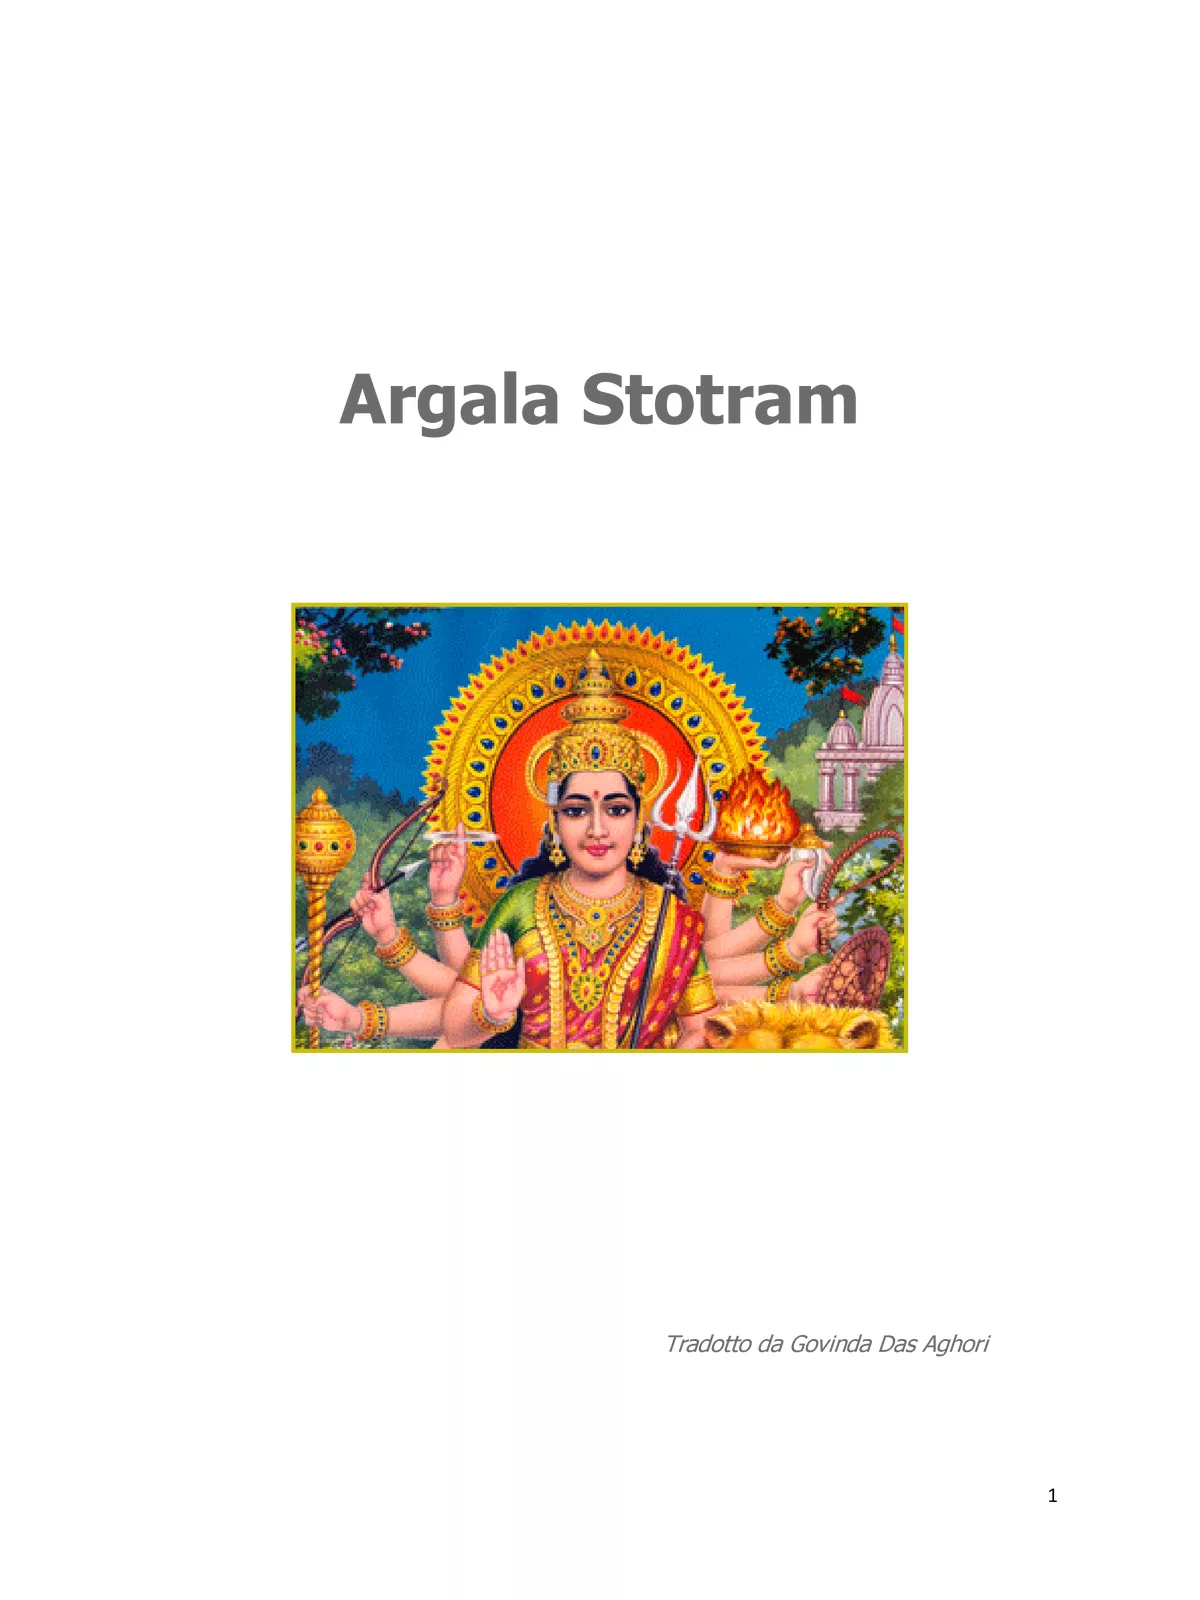 अथार्गलास्तोत्रम् – Argala Stotram